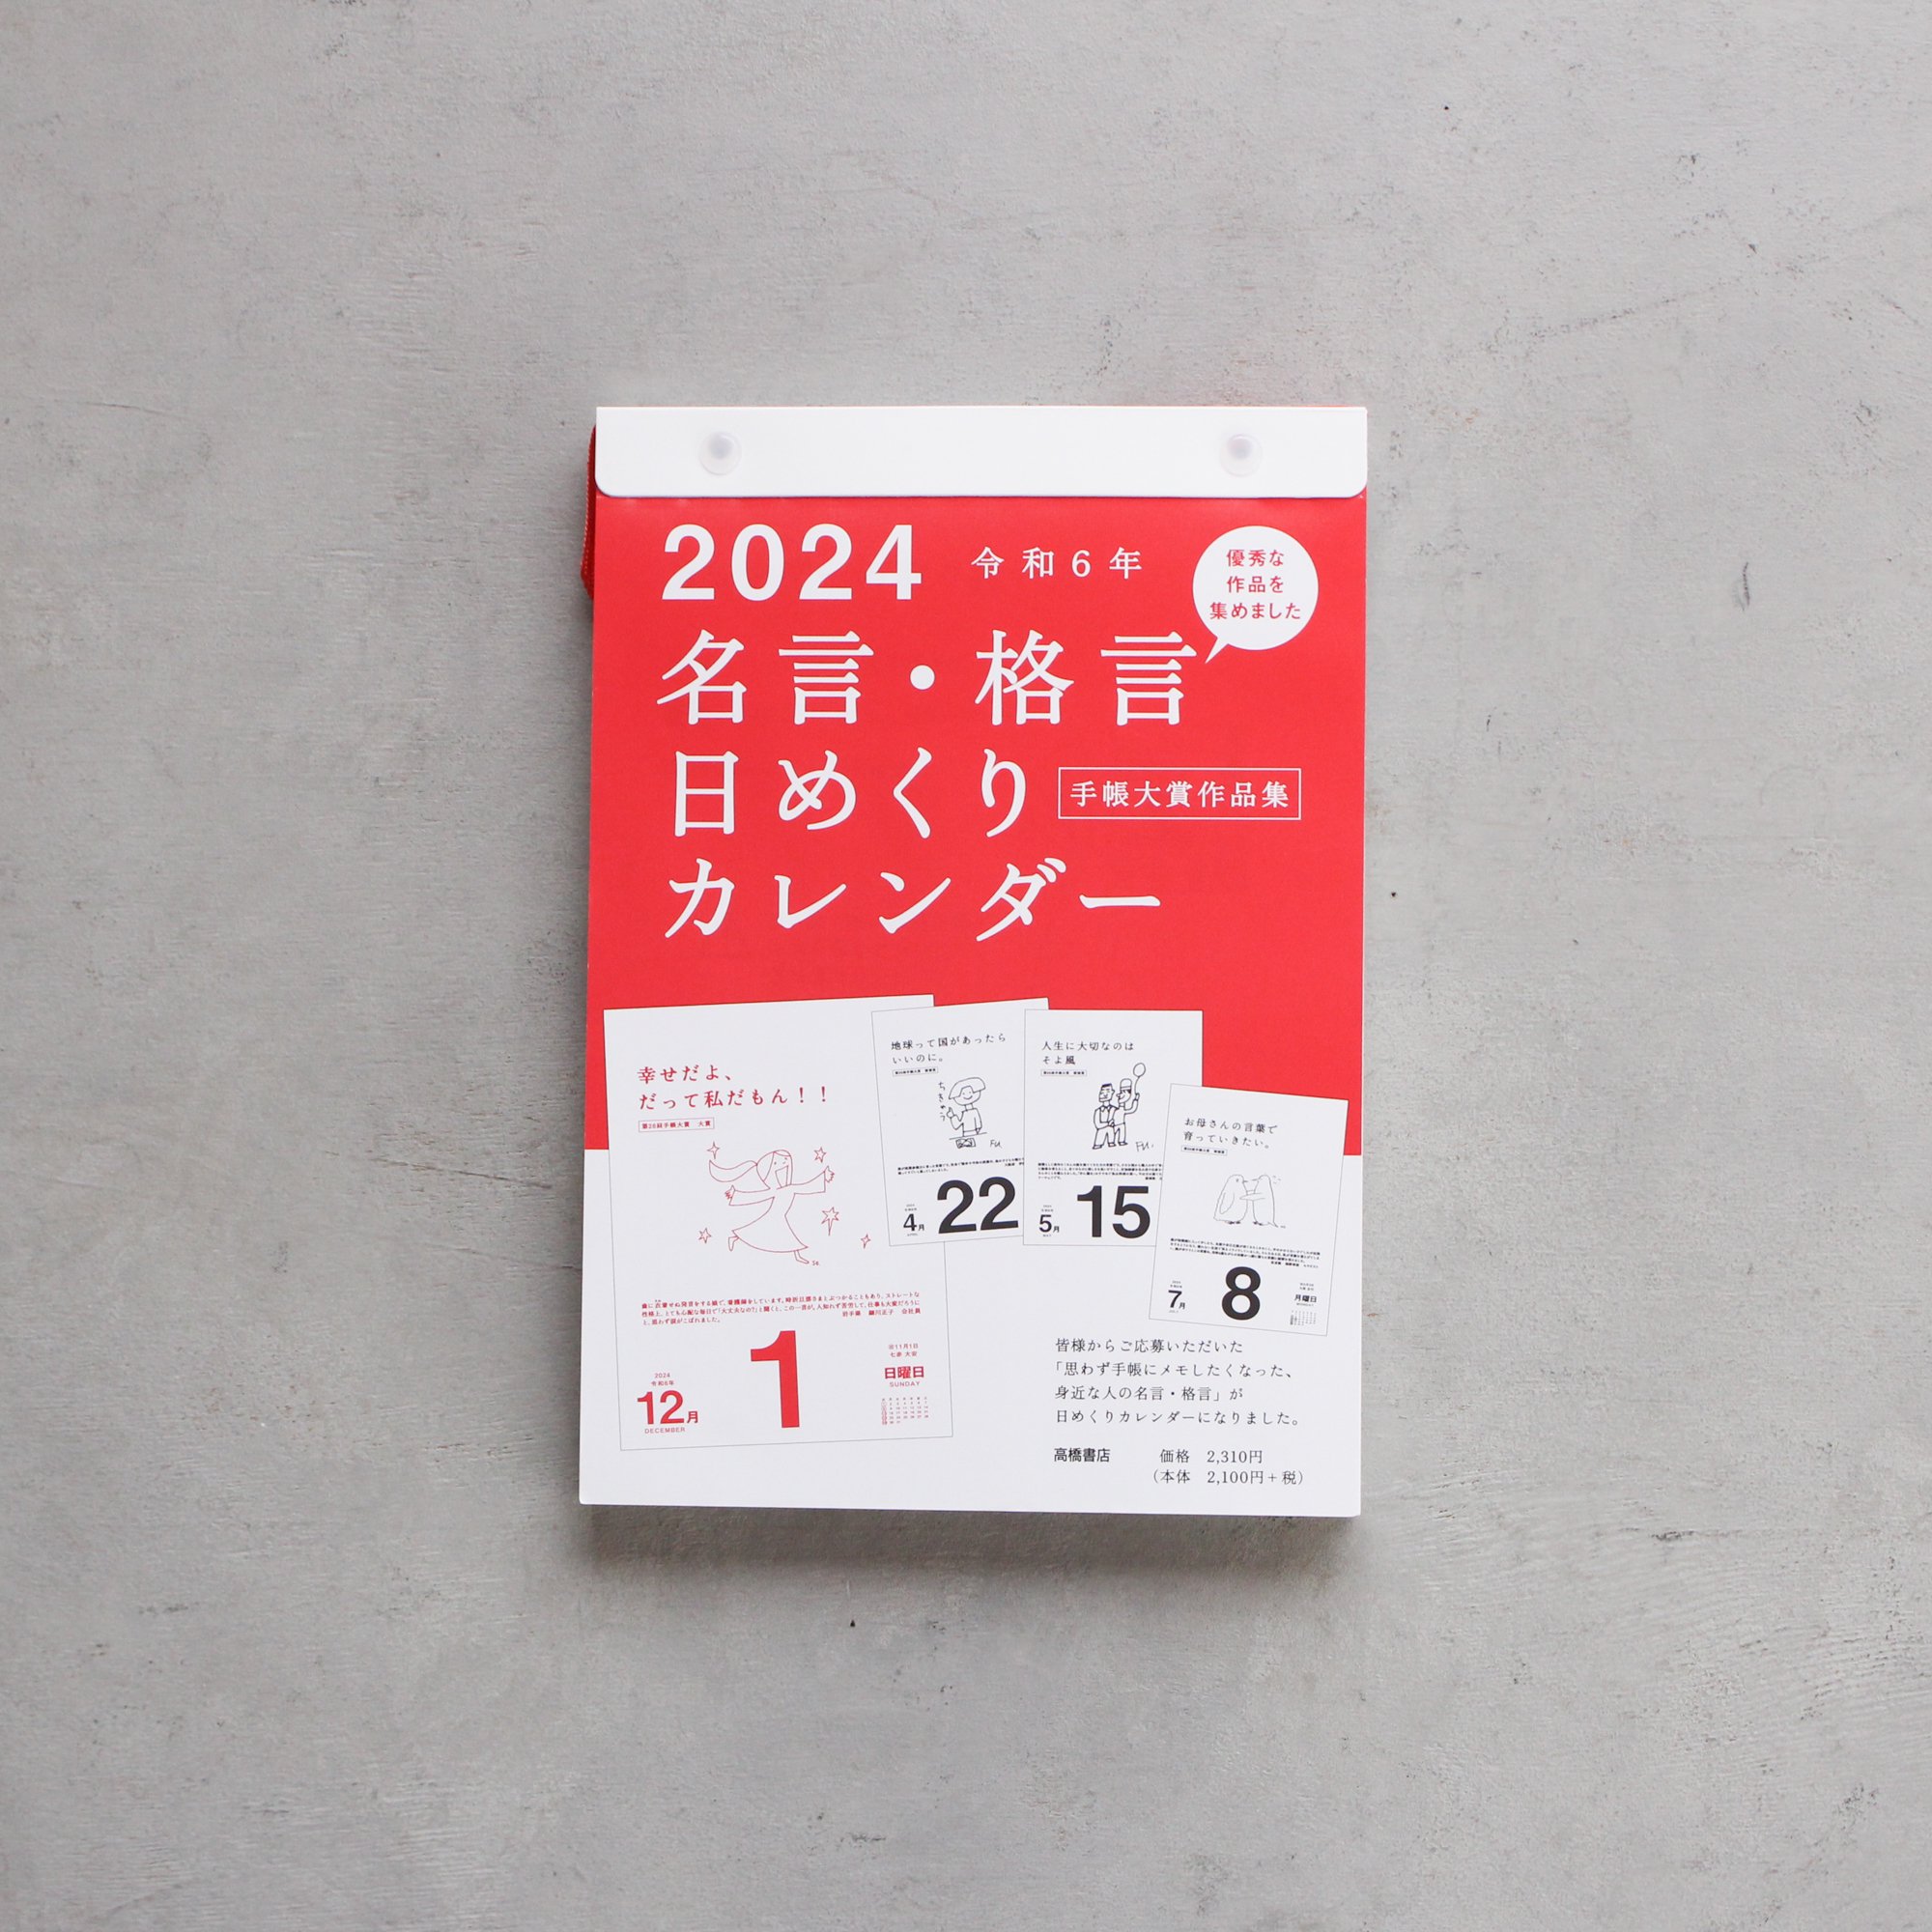 「名言・格言日めくりカレンダー」（高橋書店）2024年版